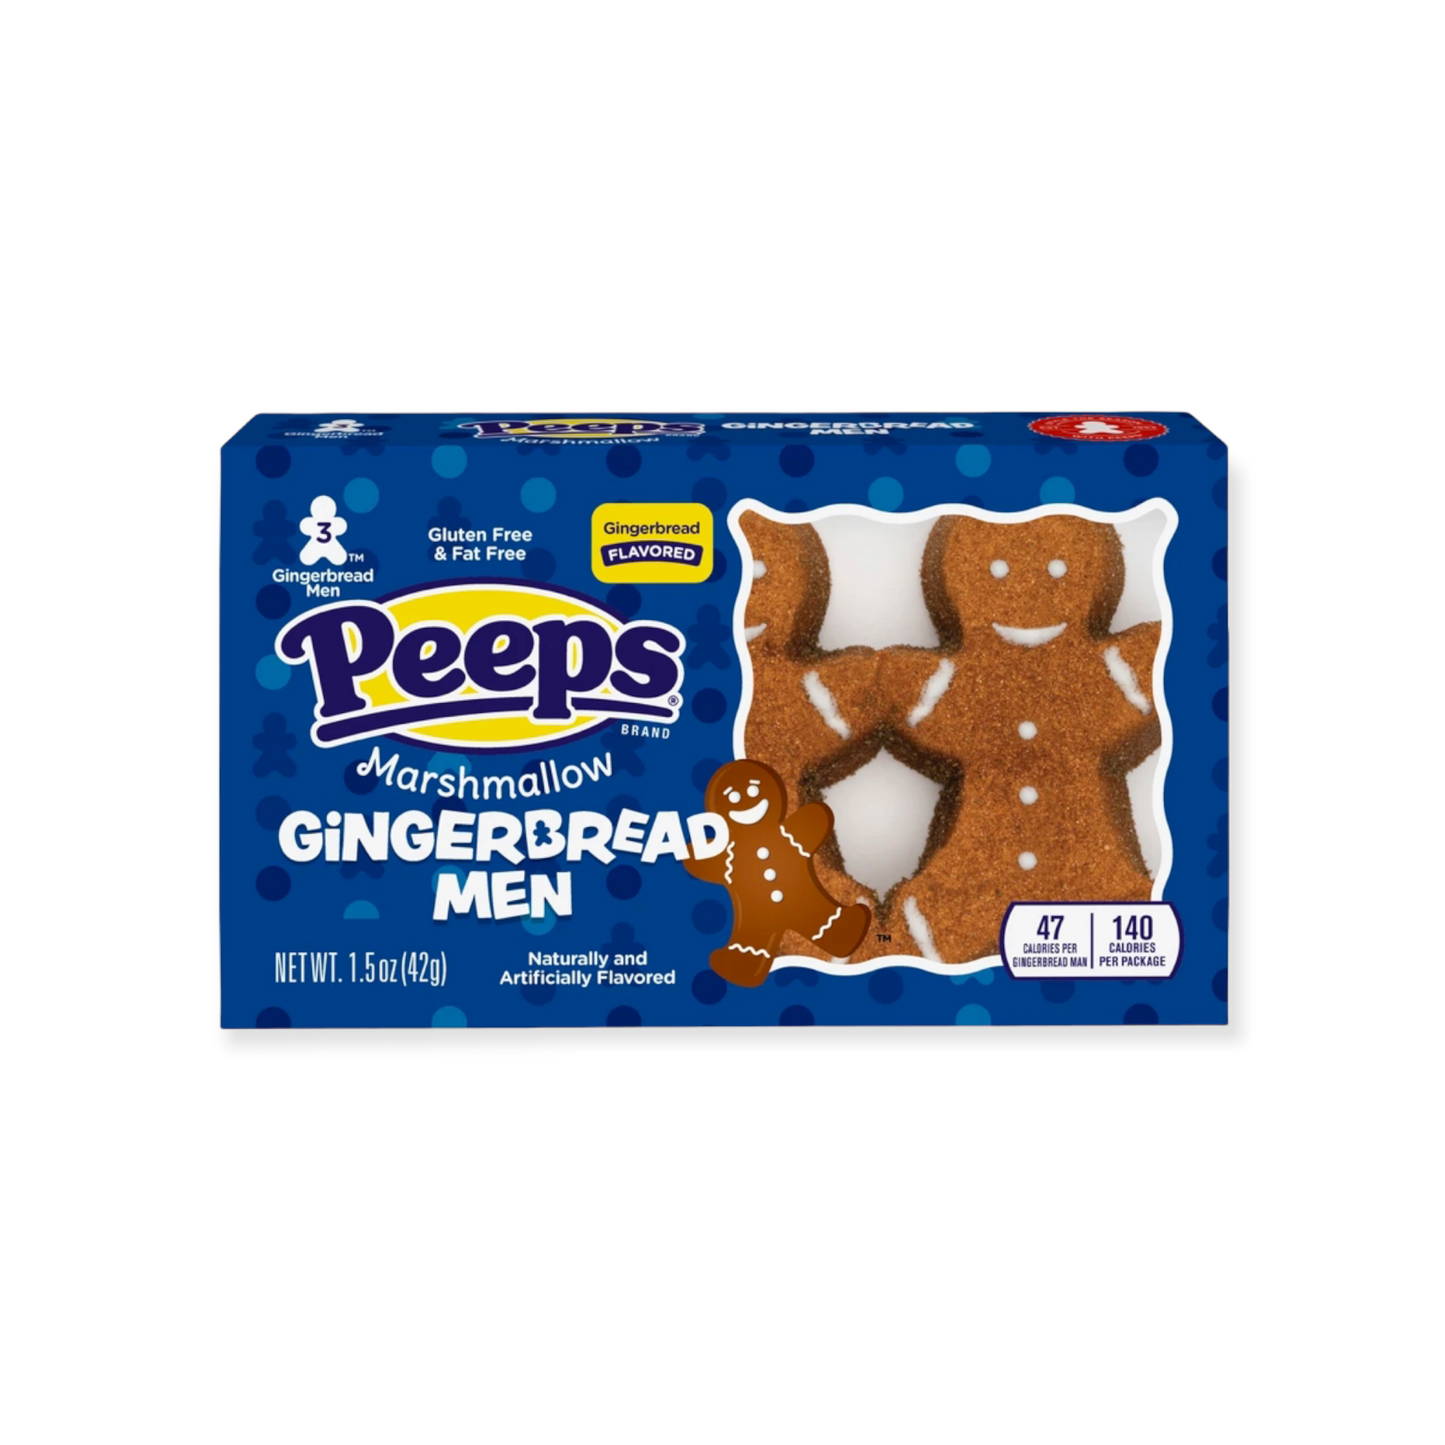 Peeps Marshmallow Gingerbread Men 3-Pack - 1.5oz (42g) [Christmas]